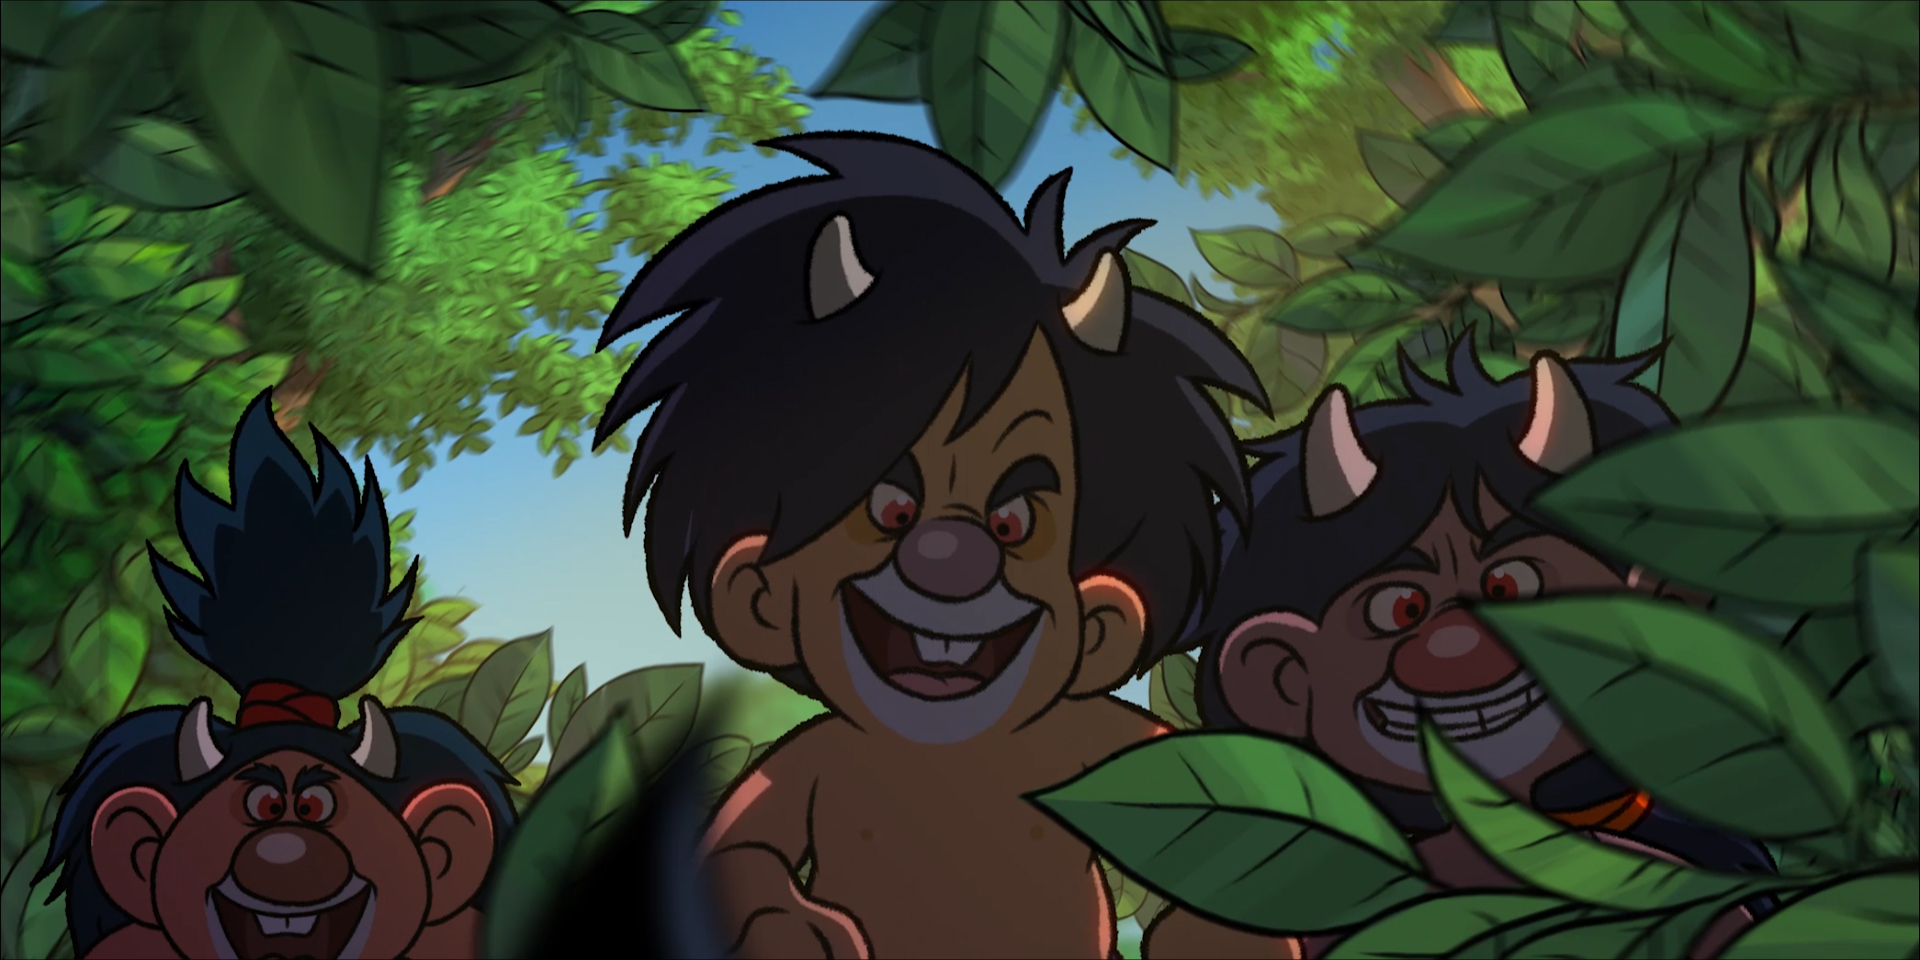 Itt a Csongor és Tünde történetét feldolgozó animációs film első előzetese